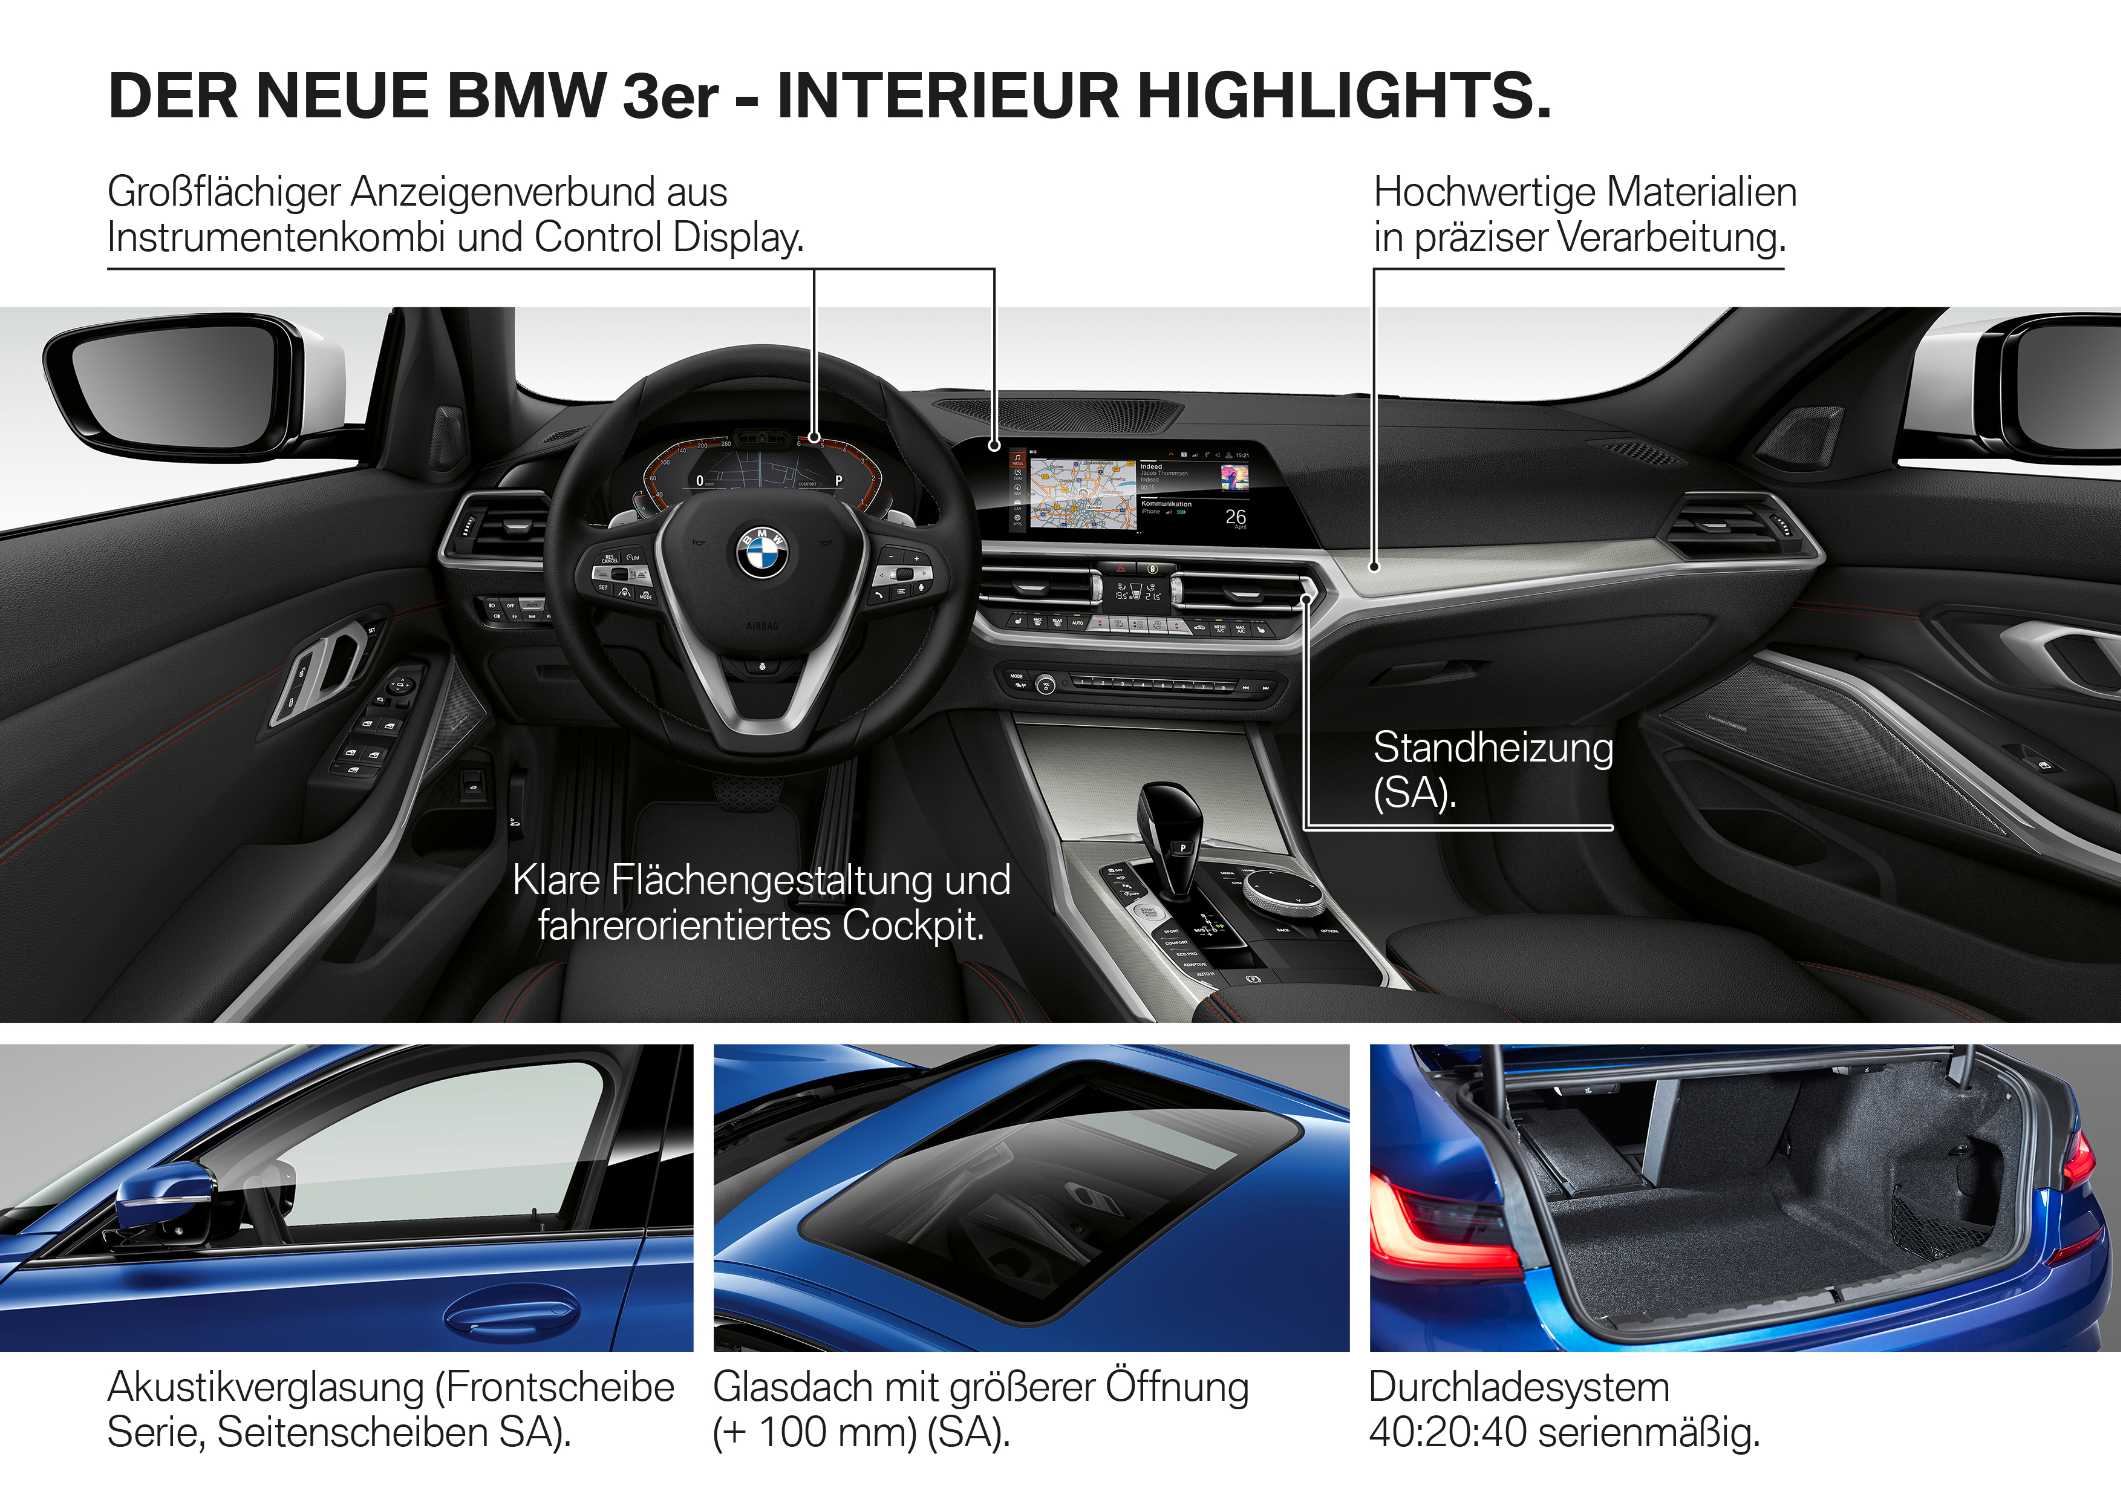 Die neue BMW 3er Limousine - Produkthighlights (10/2018).